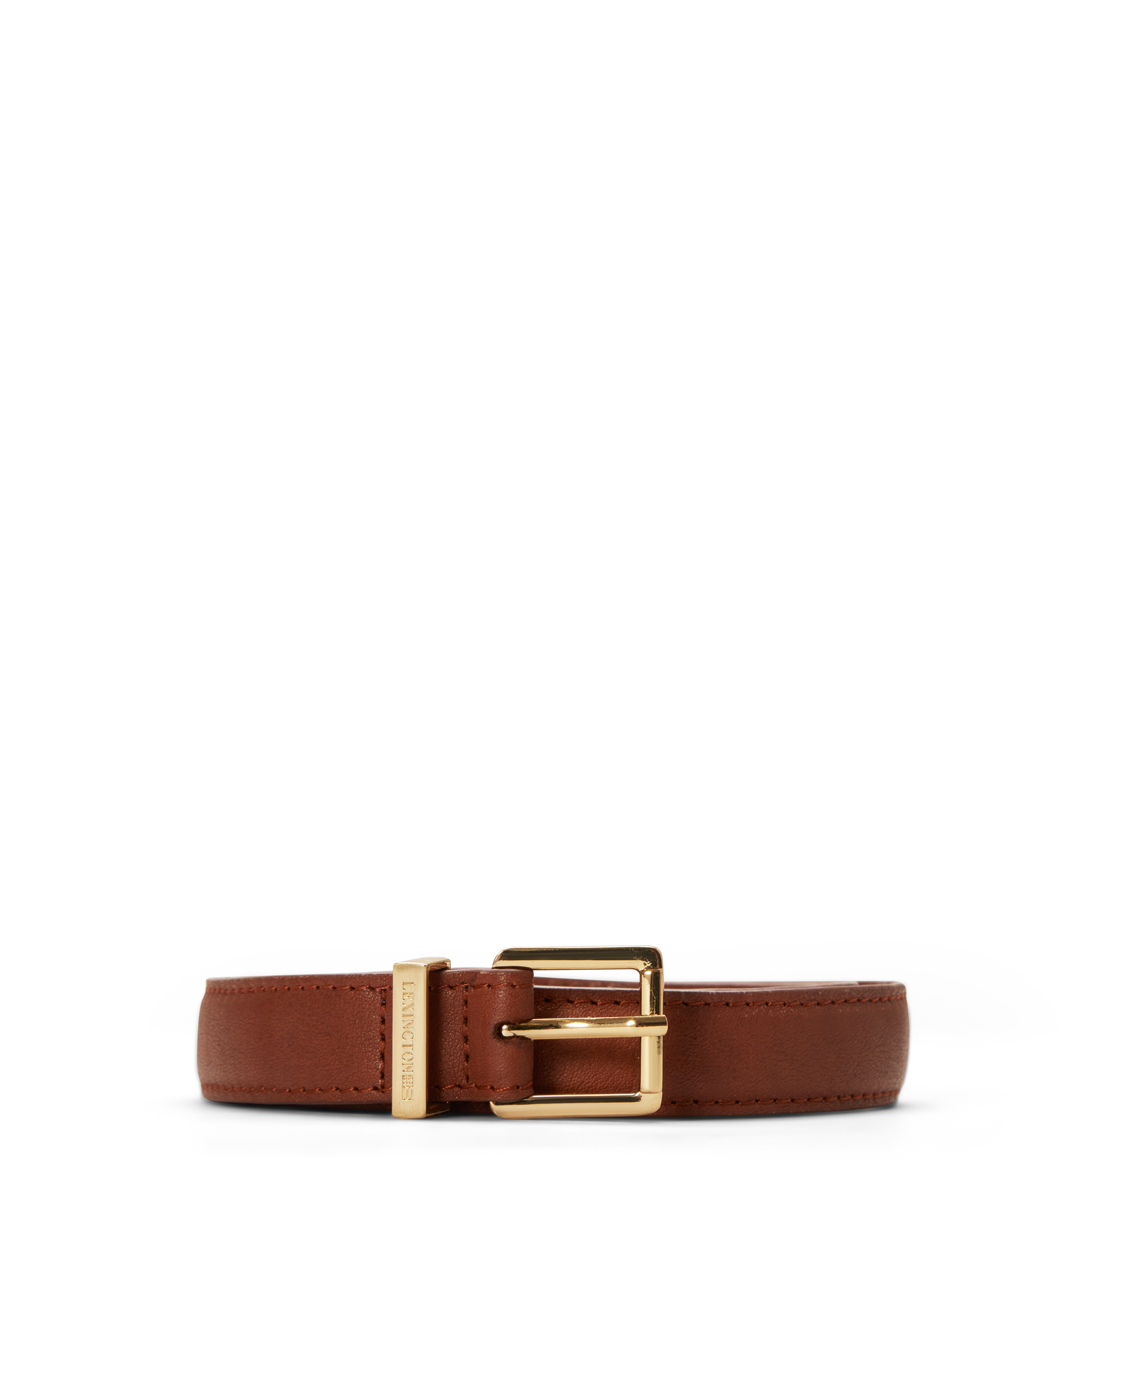 Lexington Leather Belt, Brown